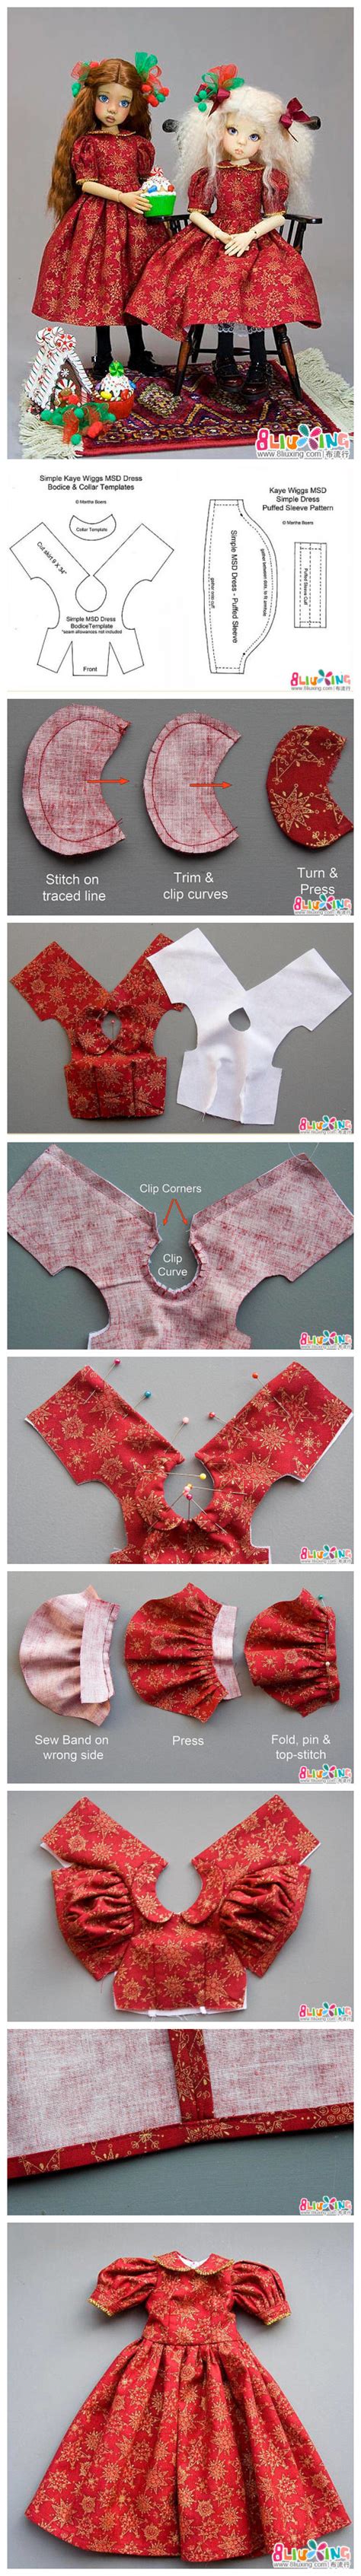 怎么做海绵纸小衣服粘贴画的手工制作教程_爱折纸网